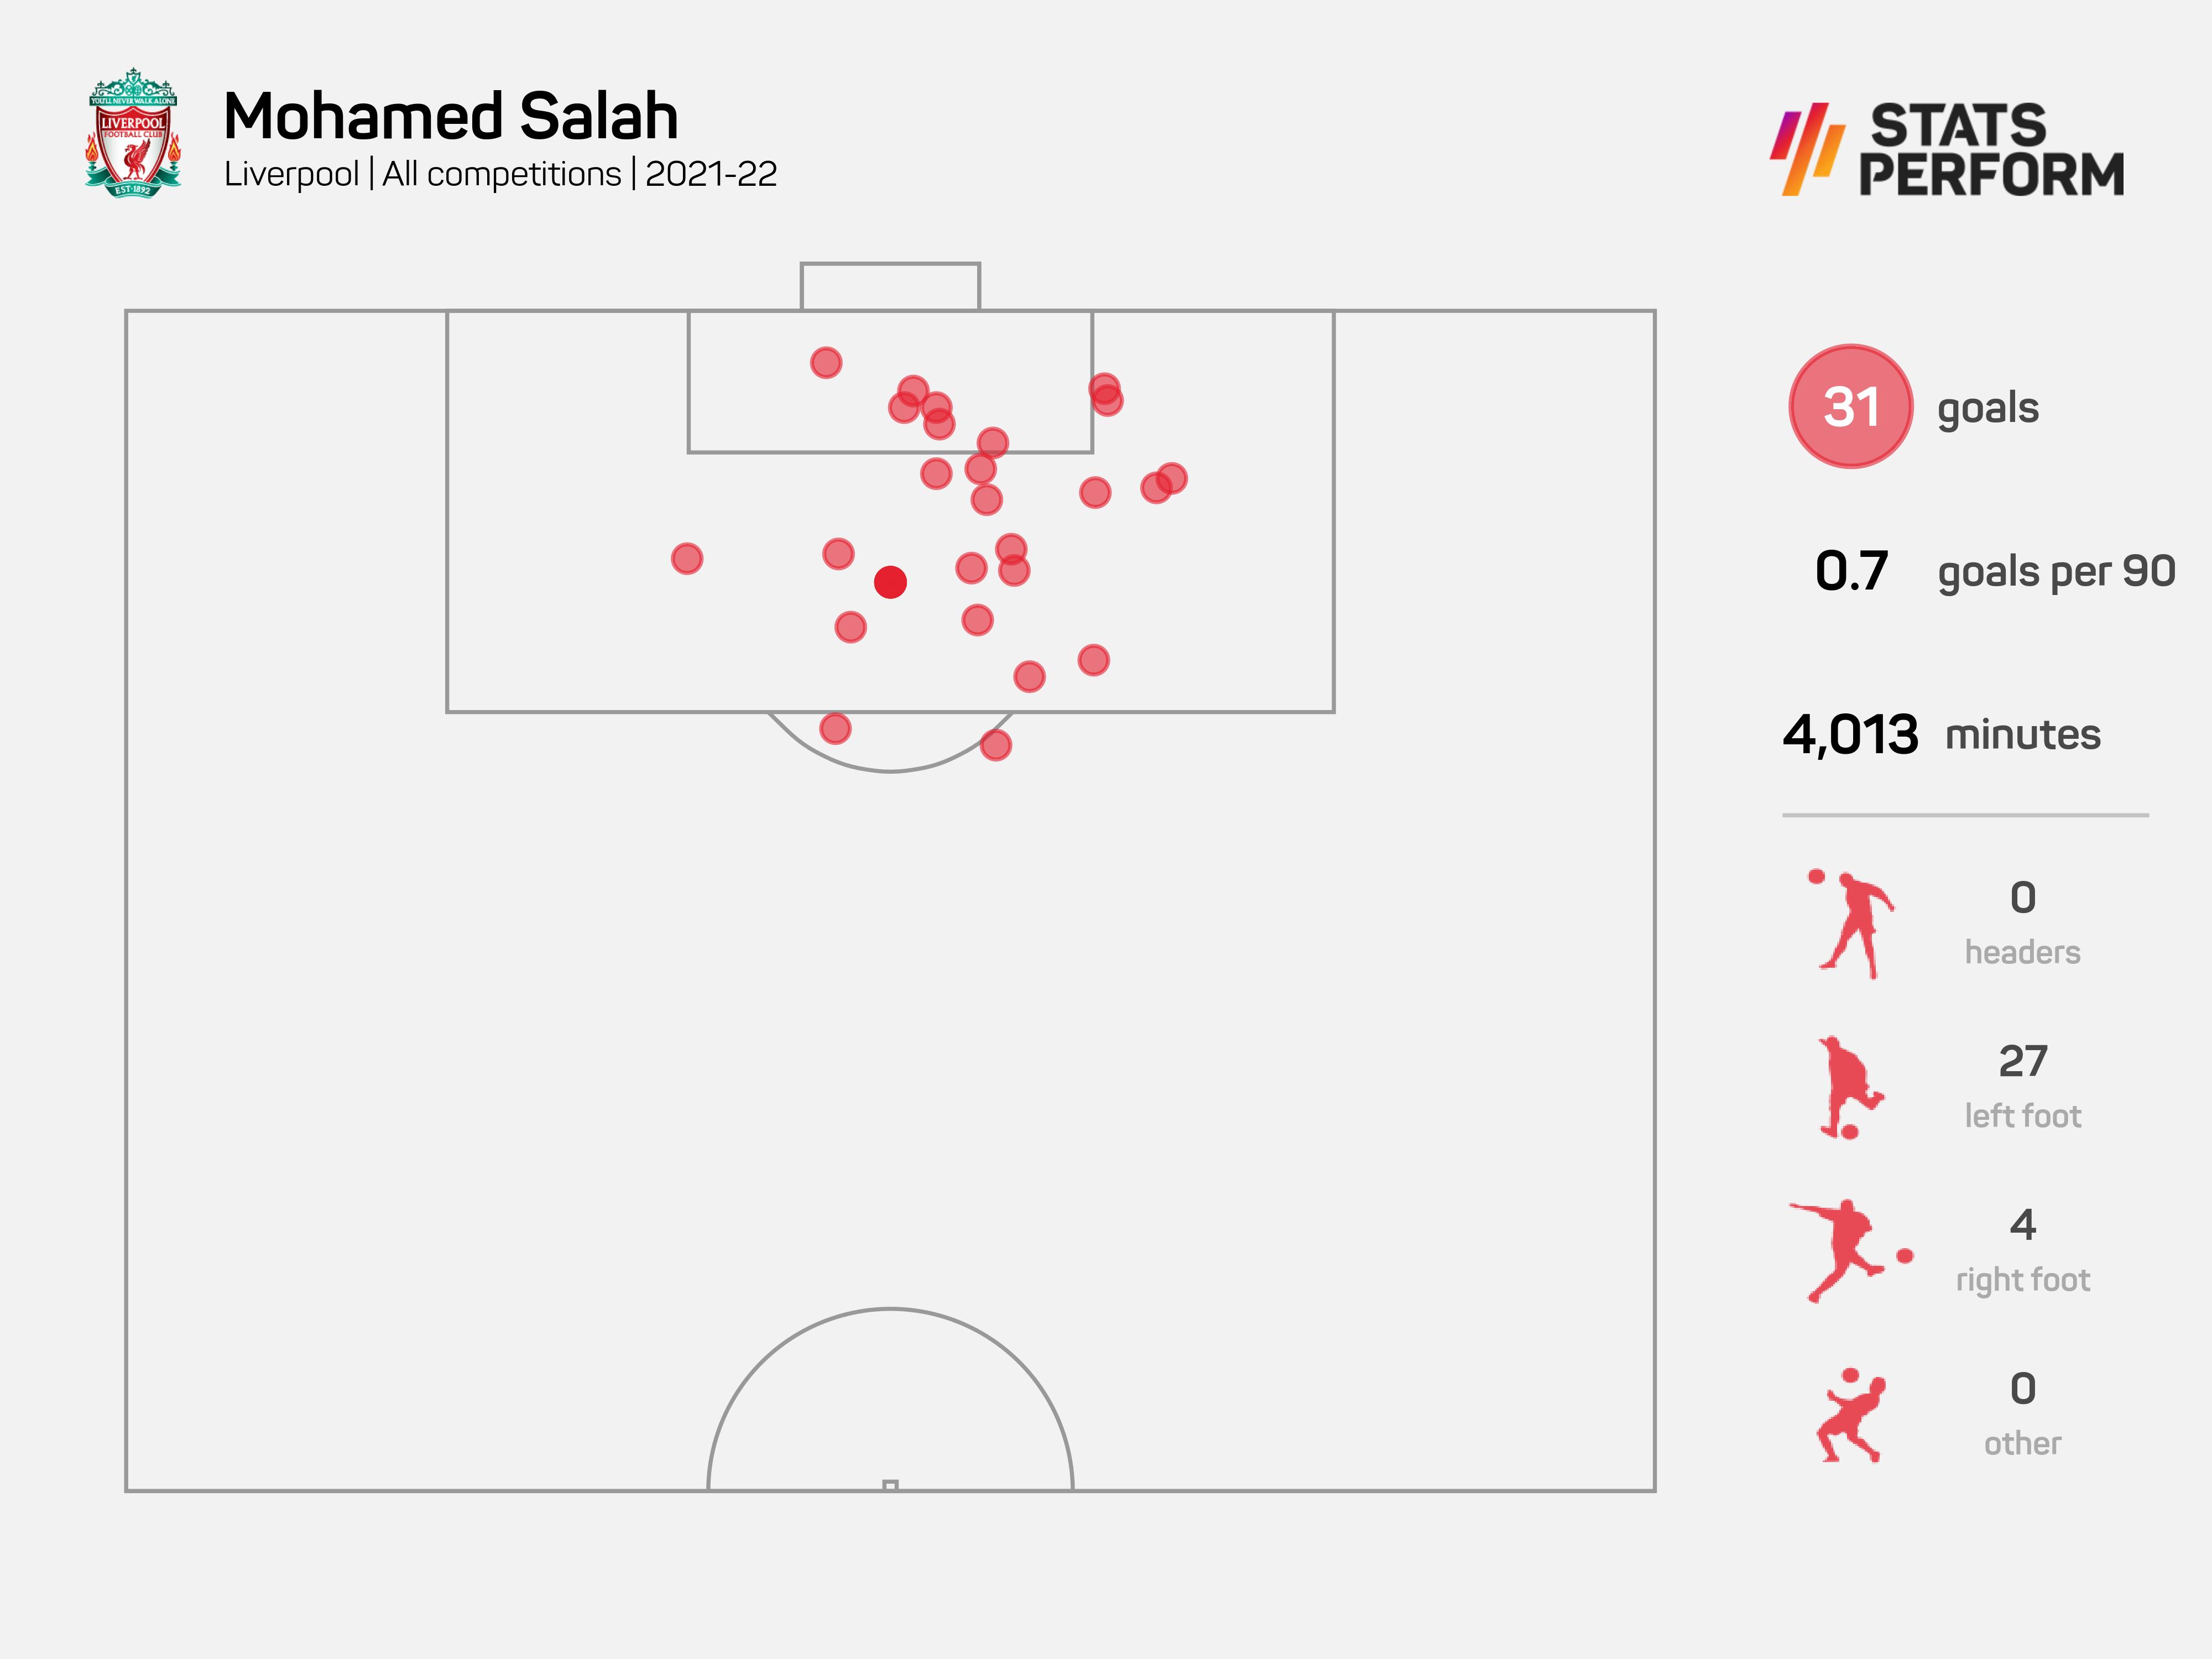 Mohamed Salah scored 31 goals last season